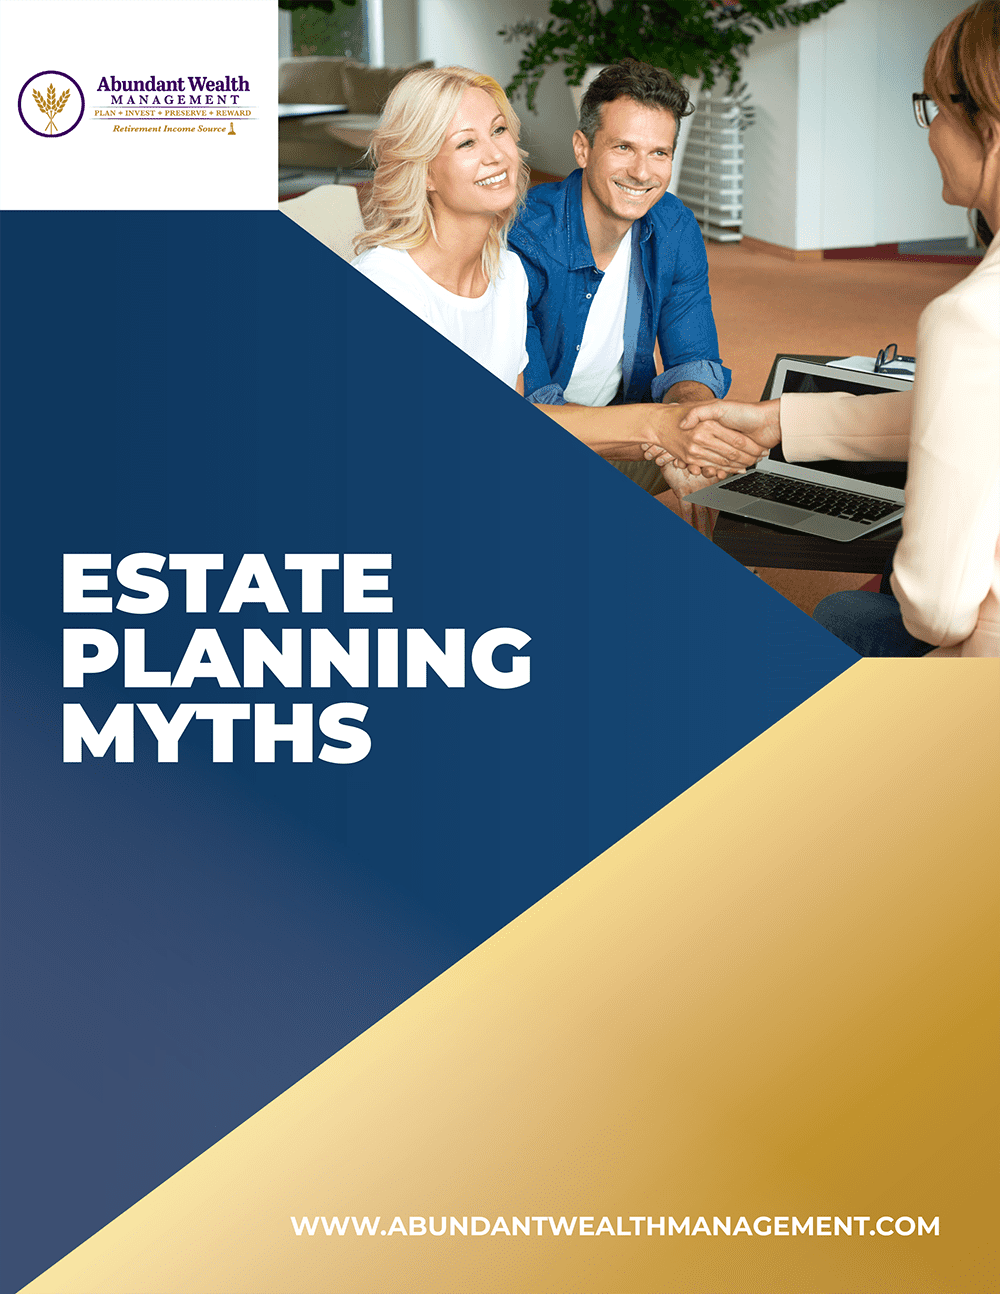 Abundant Wealth Management - Estate Planning Myths-1